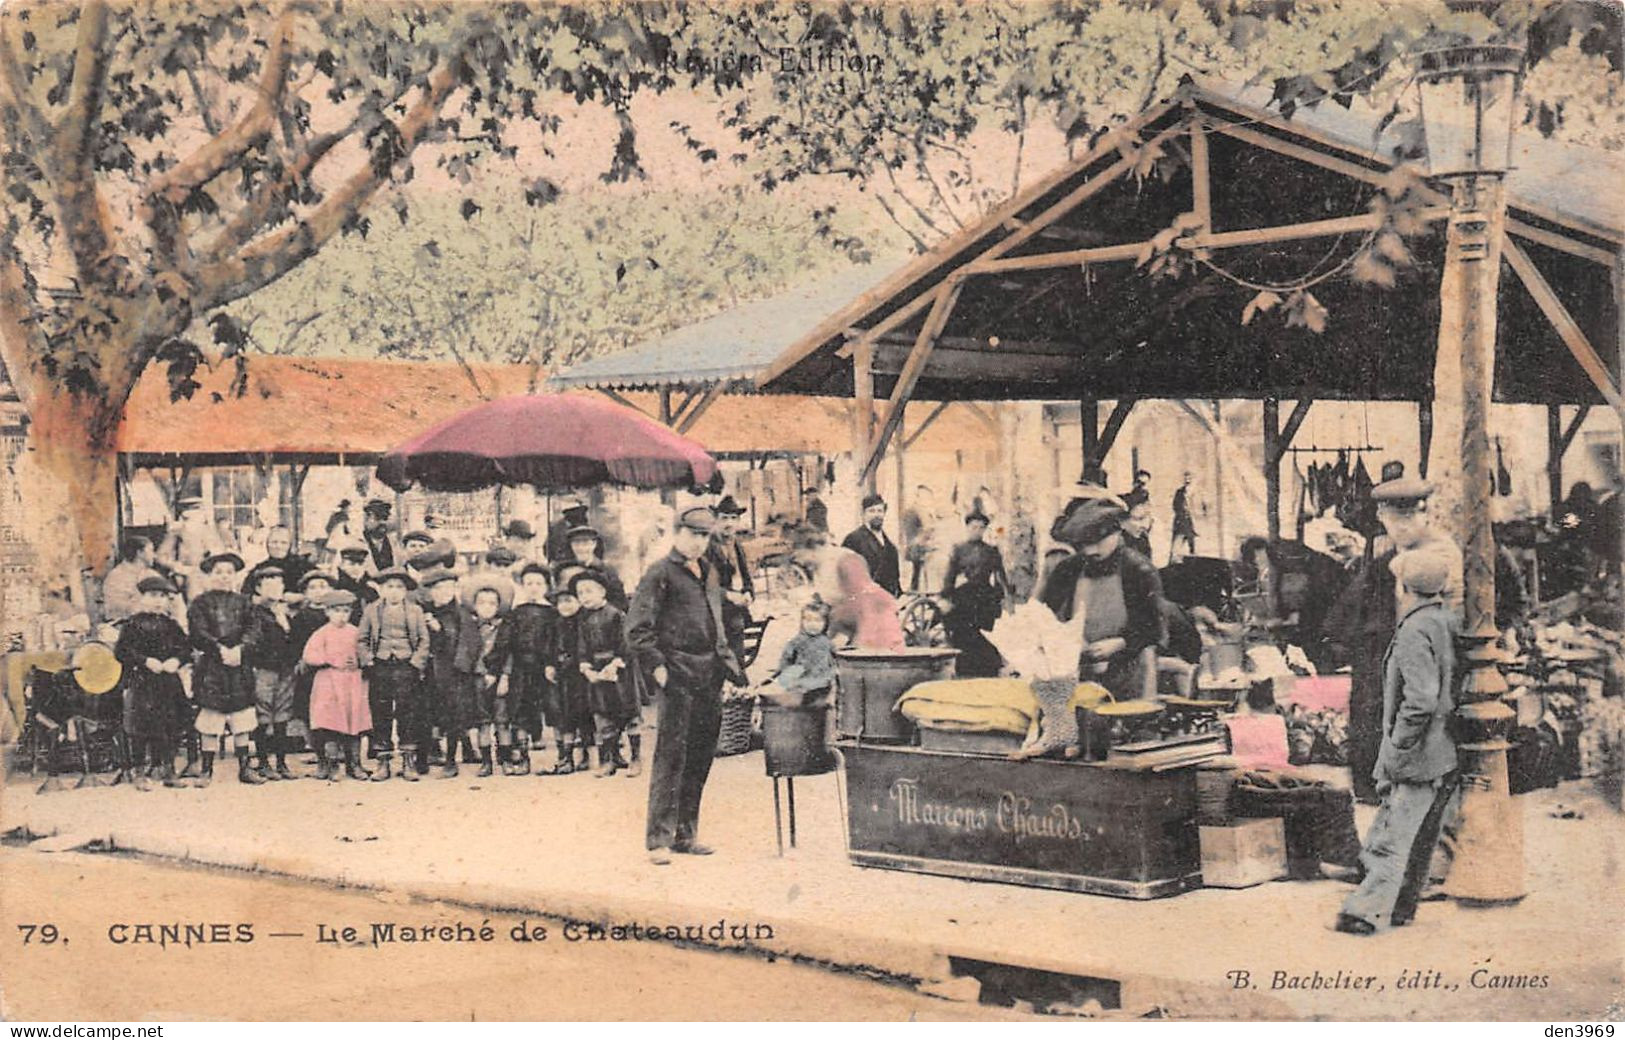 CANNES (Alpes-Maritimes) - Le Marché De Chateaudun - Vendeur De Marrons Chauds - Couleurs (RARE) - Voyagé 1907 (2 Scans) - Cannes